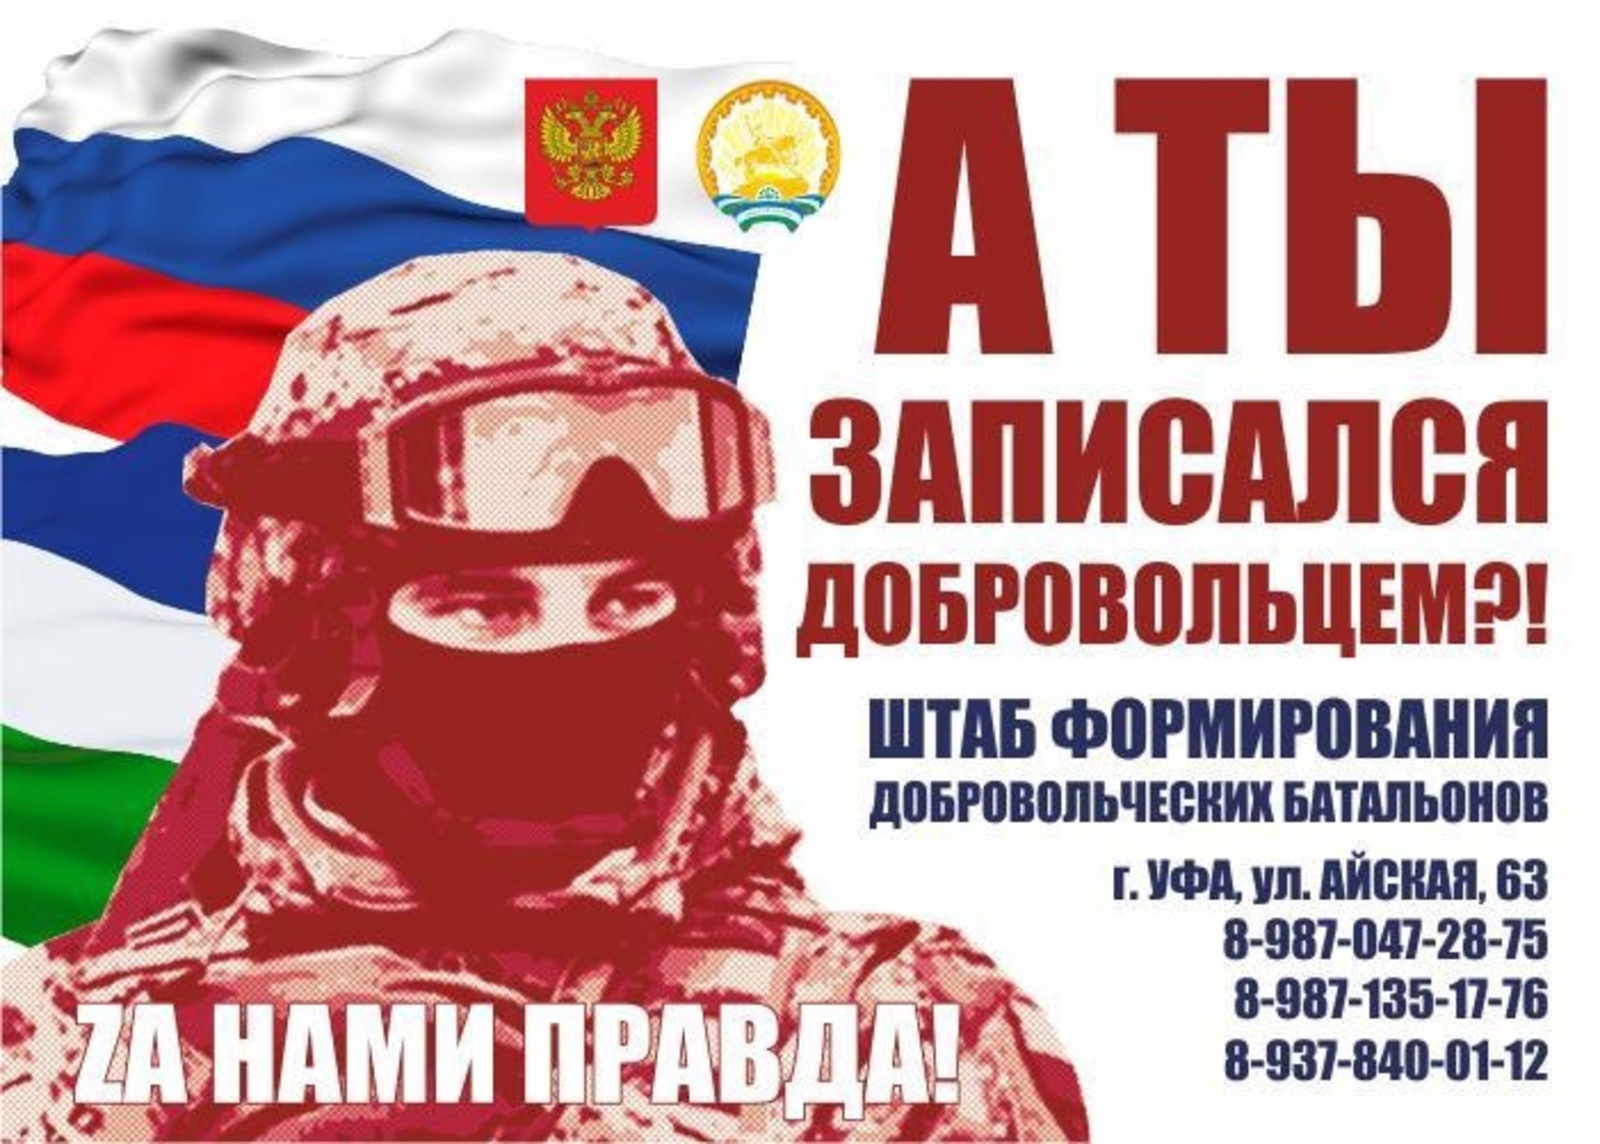 В Башкирии формируются добровольческие батальоны им. Даяна Мурзина и «Северные амуры»